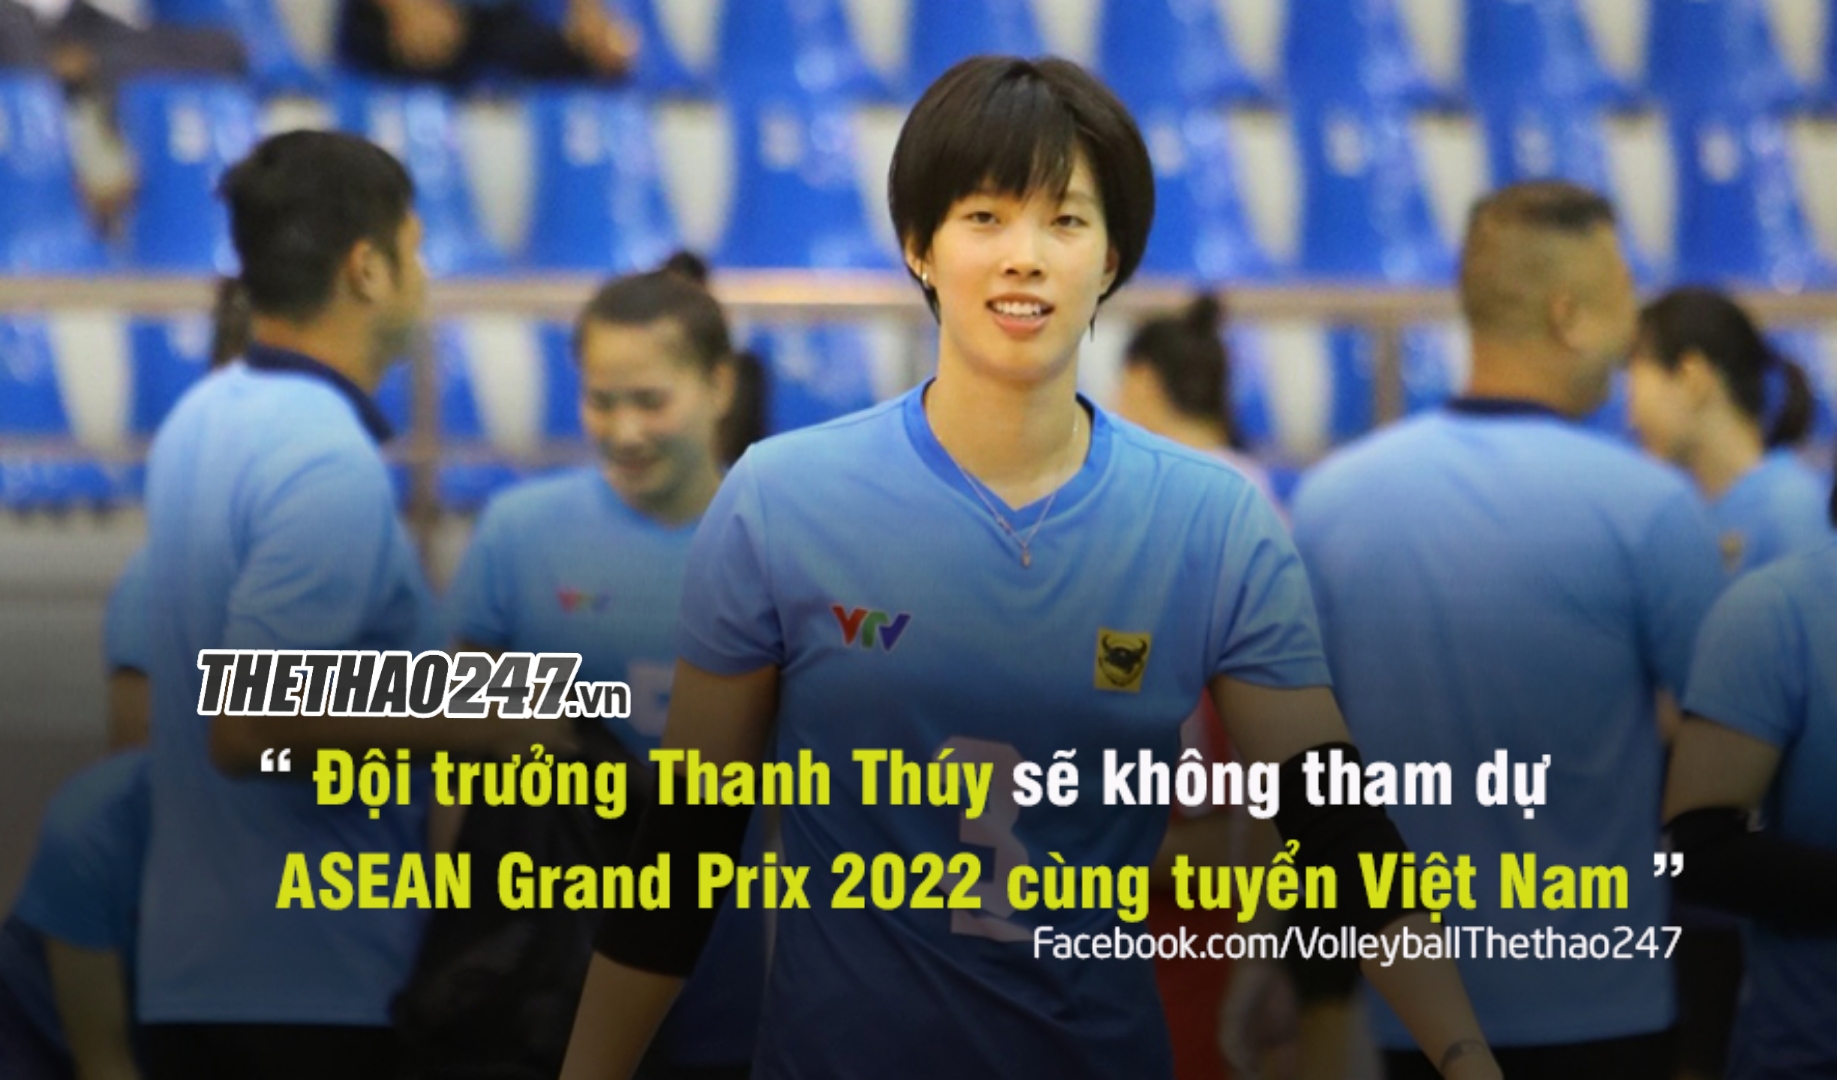 PFU BlueCats ‘นำข่าวร้าย’ มาสู่ทีมวอลเลย์บอลหญิงเวียดนาม